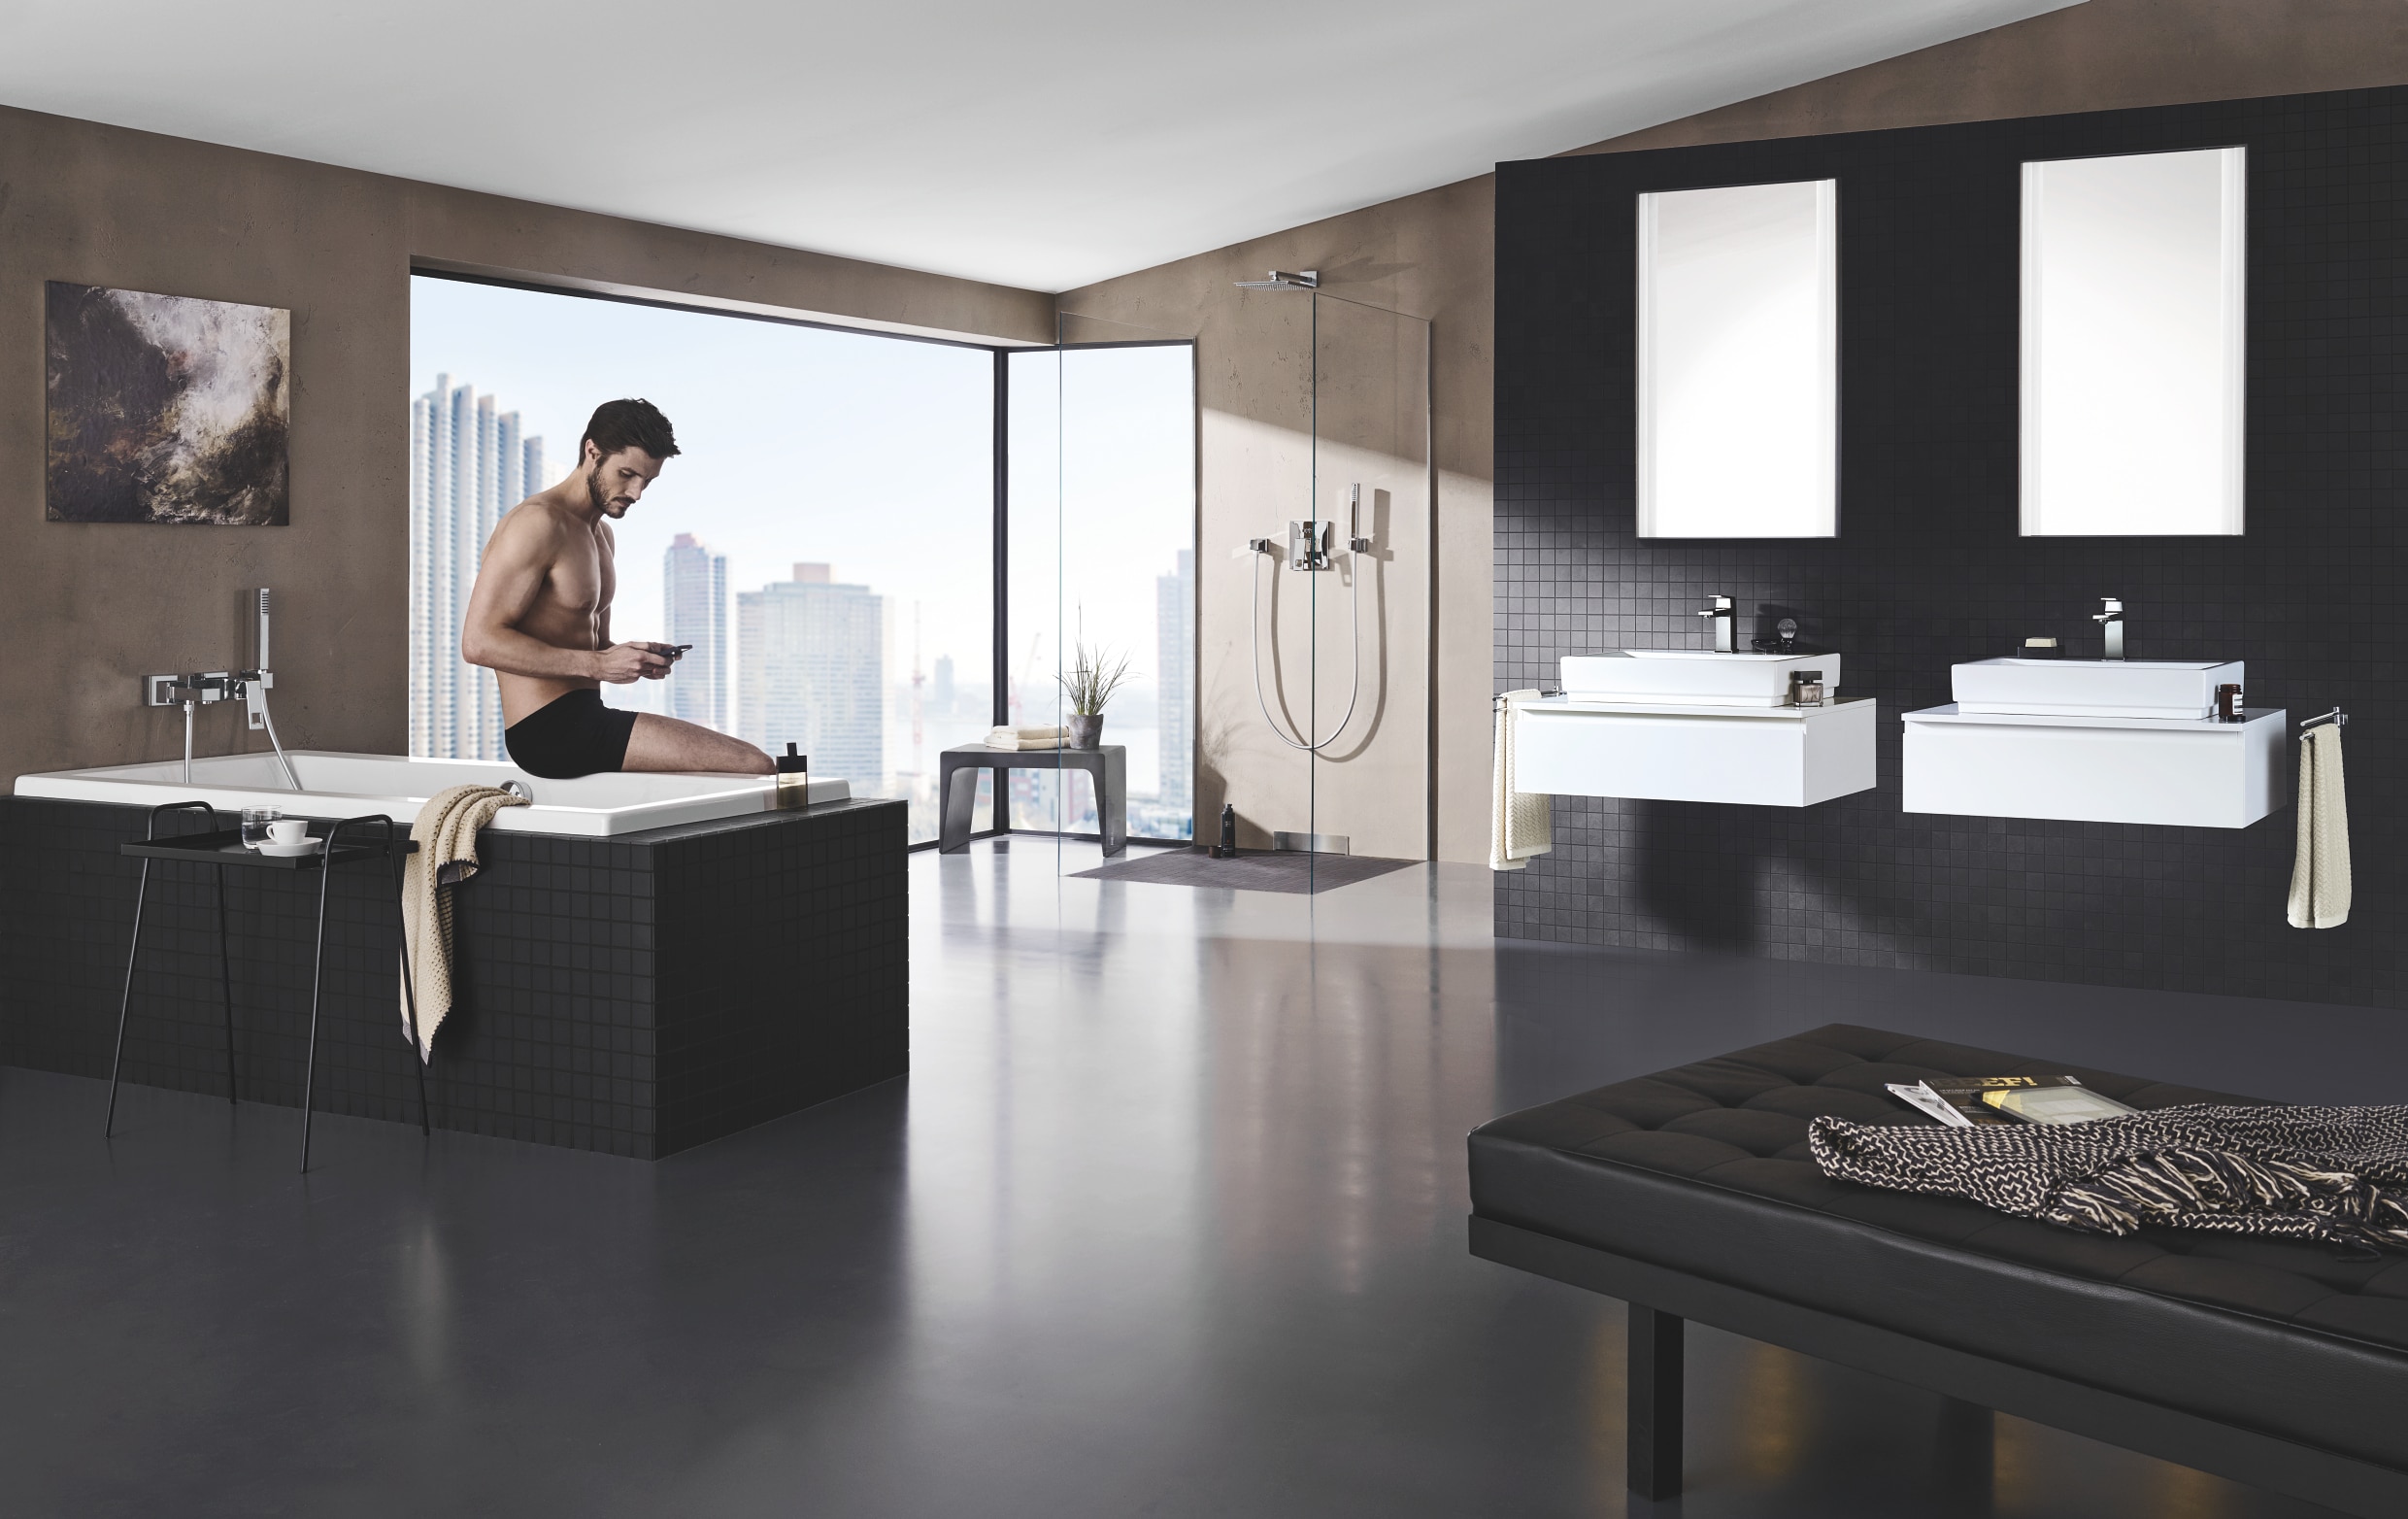 Grohe zeigt ein großzügiges Badezimmer mit Wanne, Dusche, sowie Cube Keramik Waschtisch mit Eurocube Armaturen.